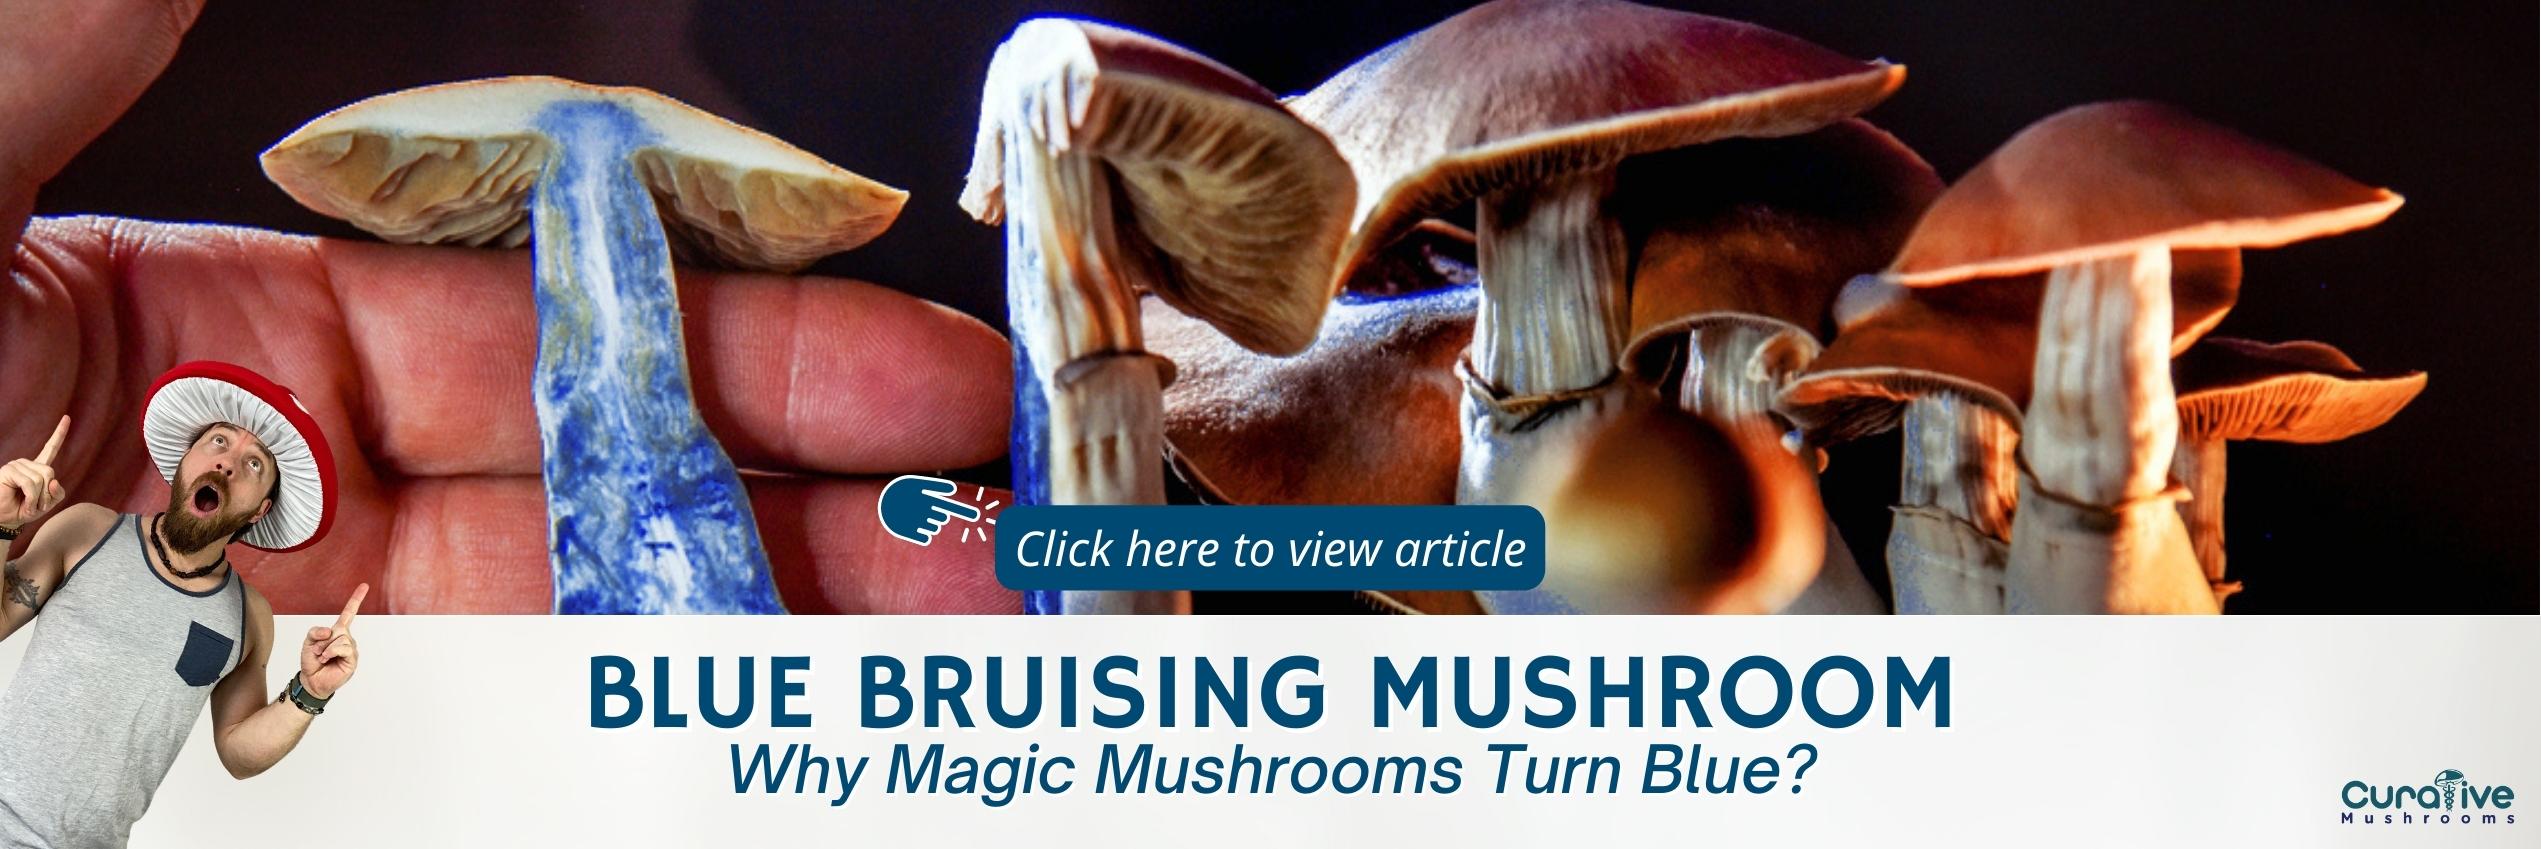 Blue Bruising Mushroom - Why Magic Mushrooms Turn Blue - Curative Mushrooms